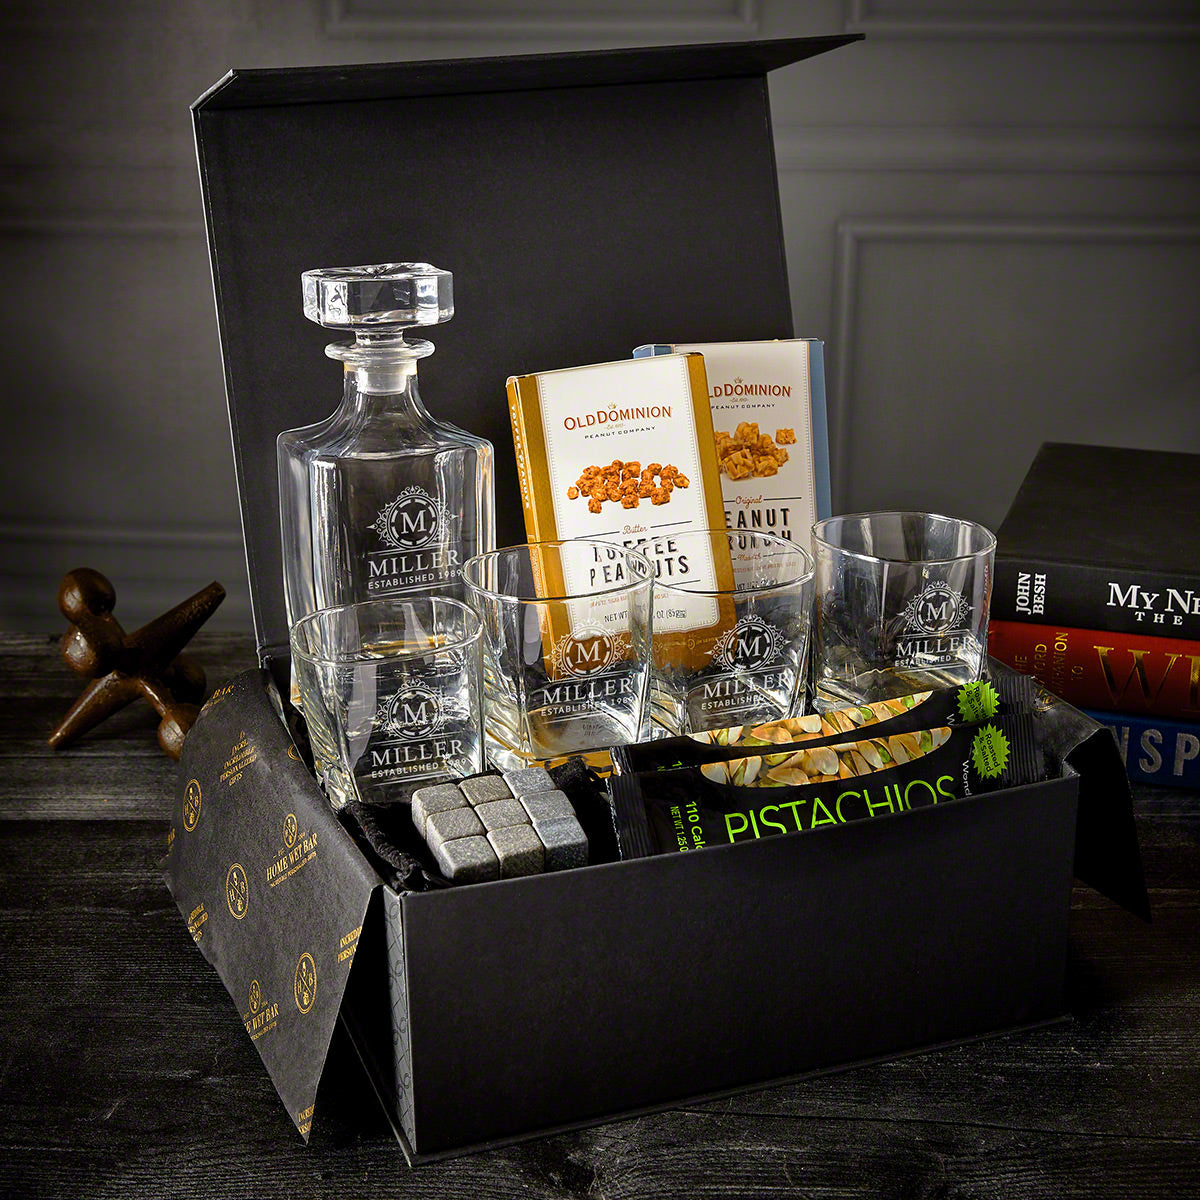 Engraved Luxury Food & Whiskey Gift Set - 11 pc